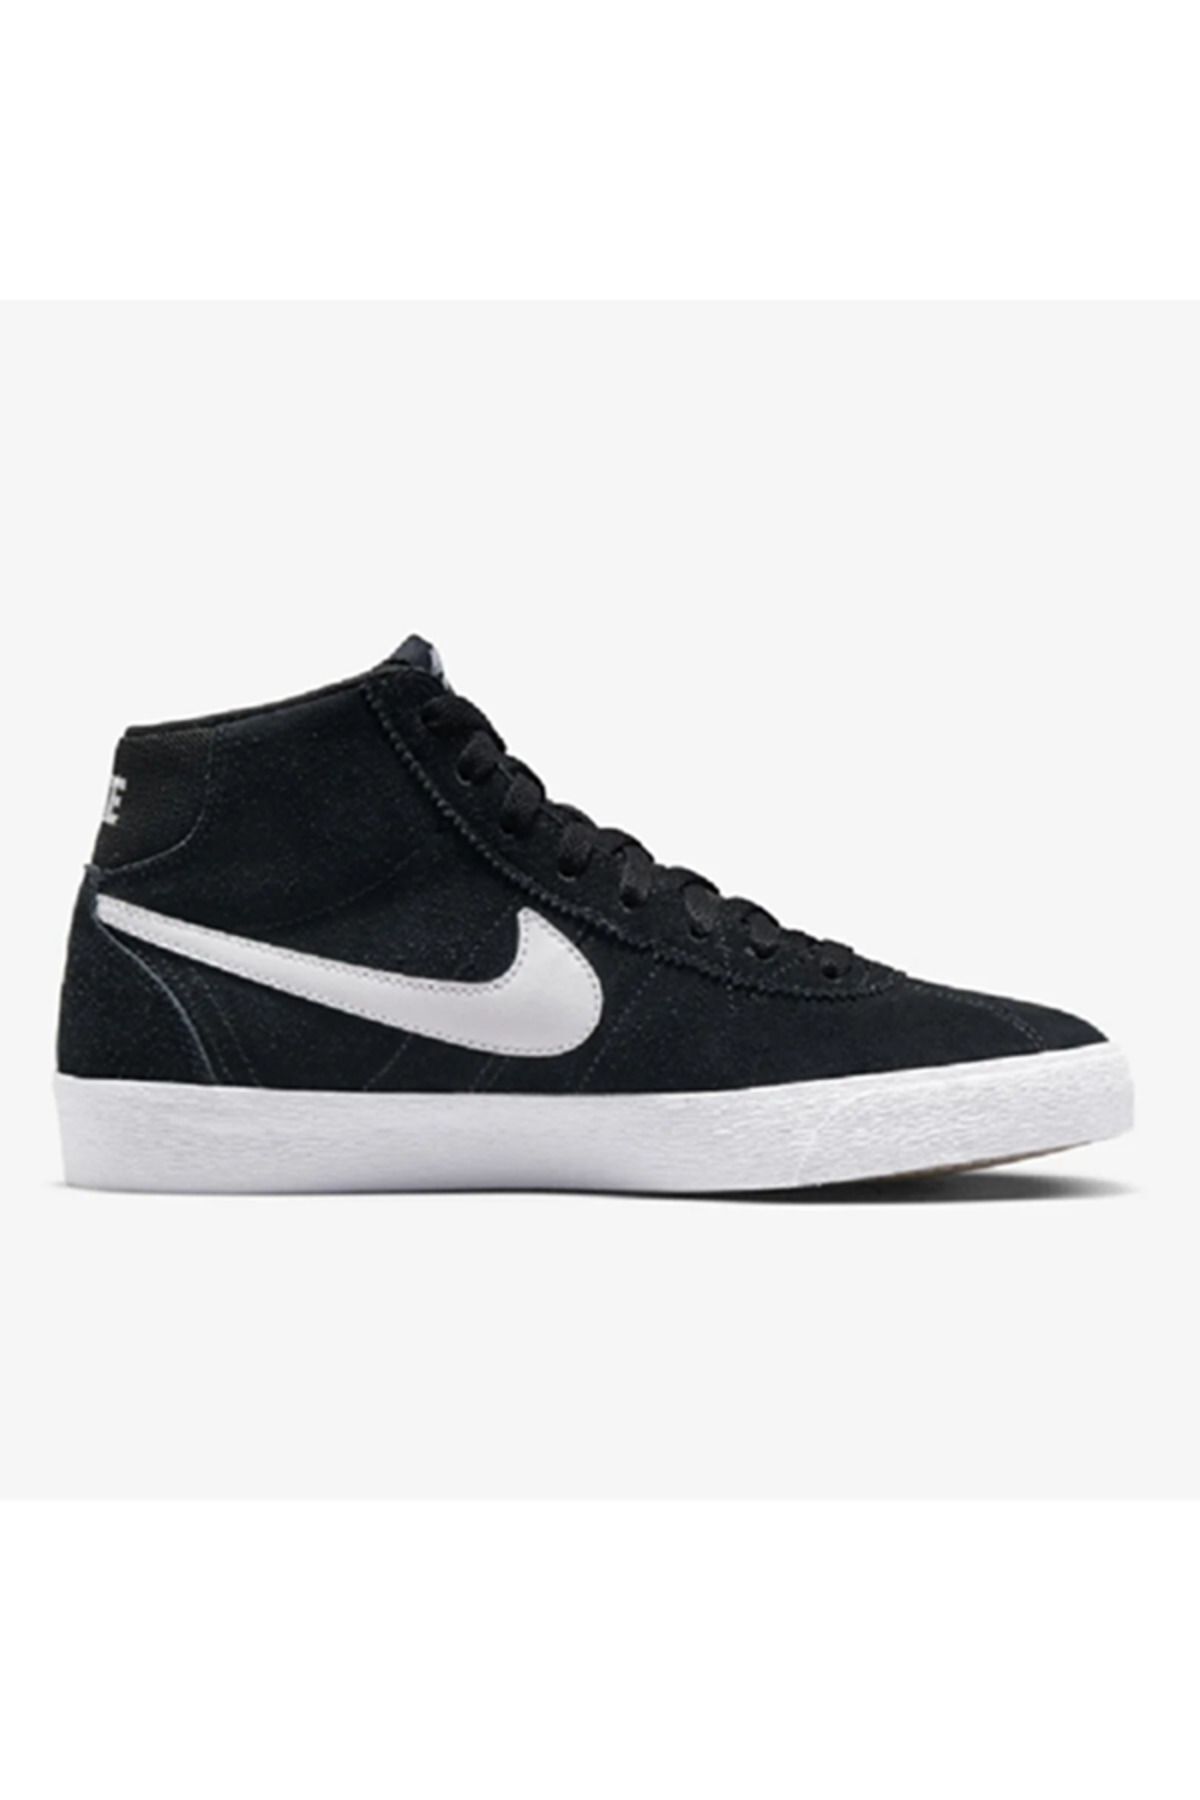 Nike Sb Bruin High Kaykay Ayakkabısı DR0126-001